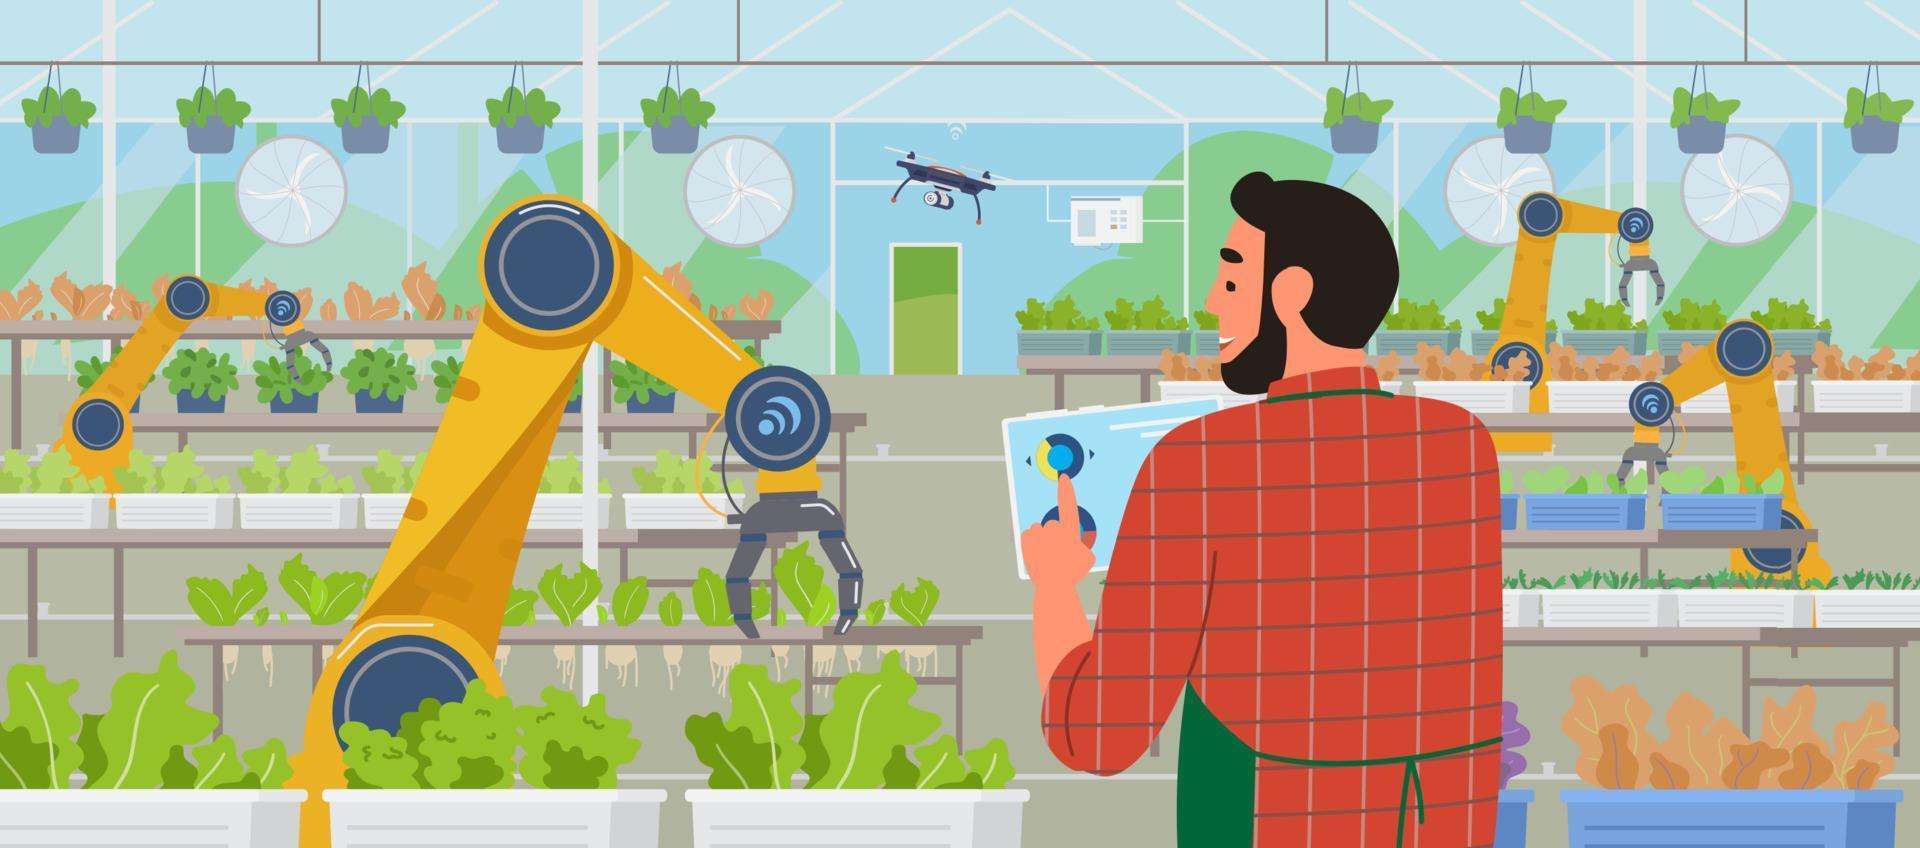 slim kas en landbouw. boer Holding tablet beheren kas met mobiel app voor afgelegen controle. salade plantages en landbouw geautomatiseerd robots en drones vlak vector illustratie.